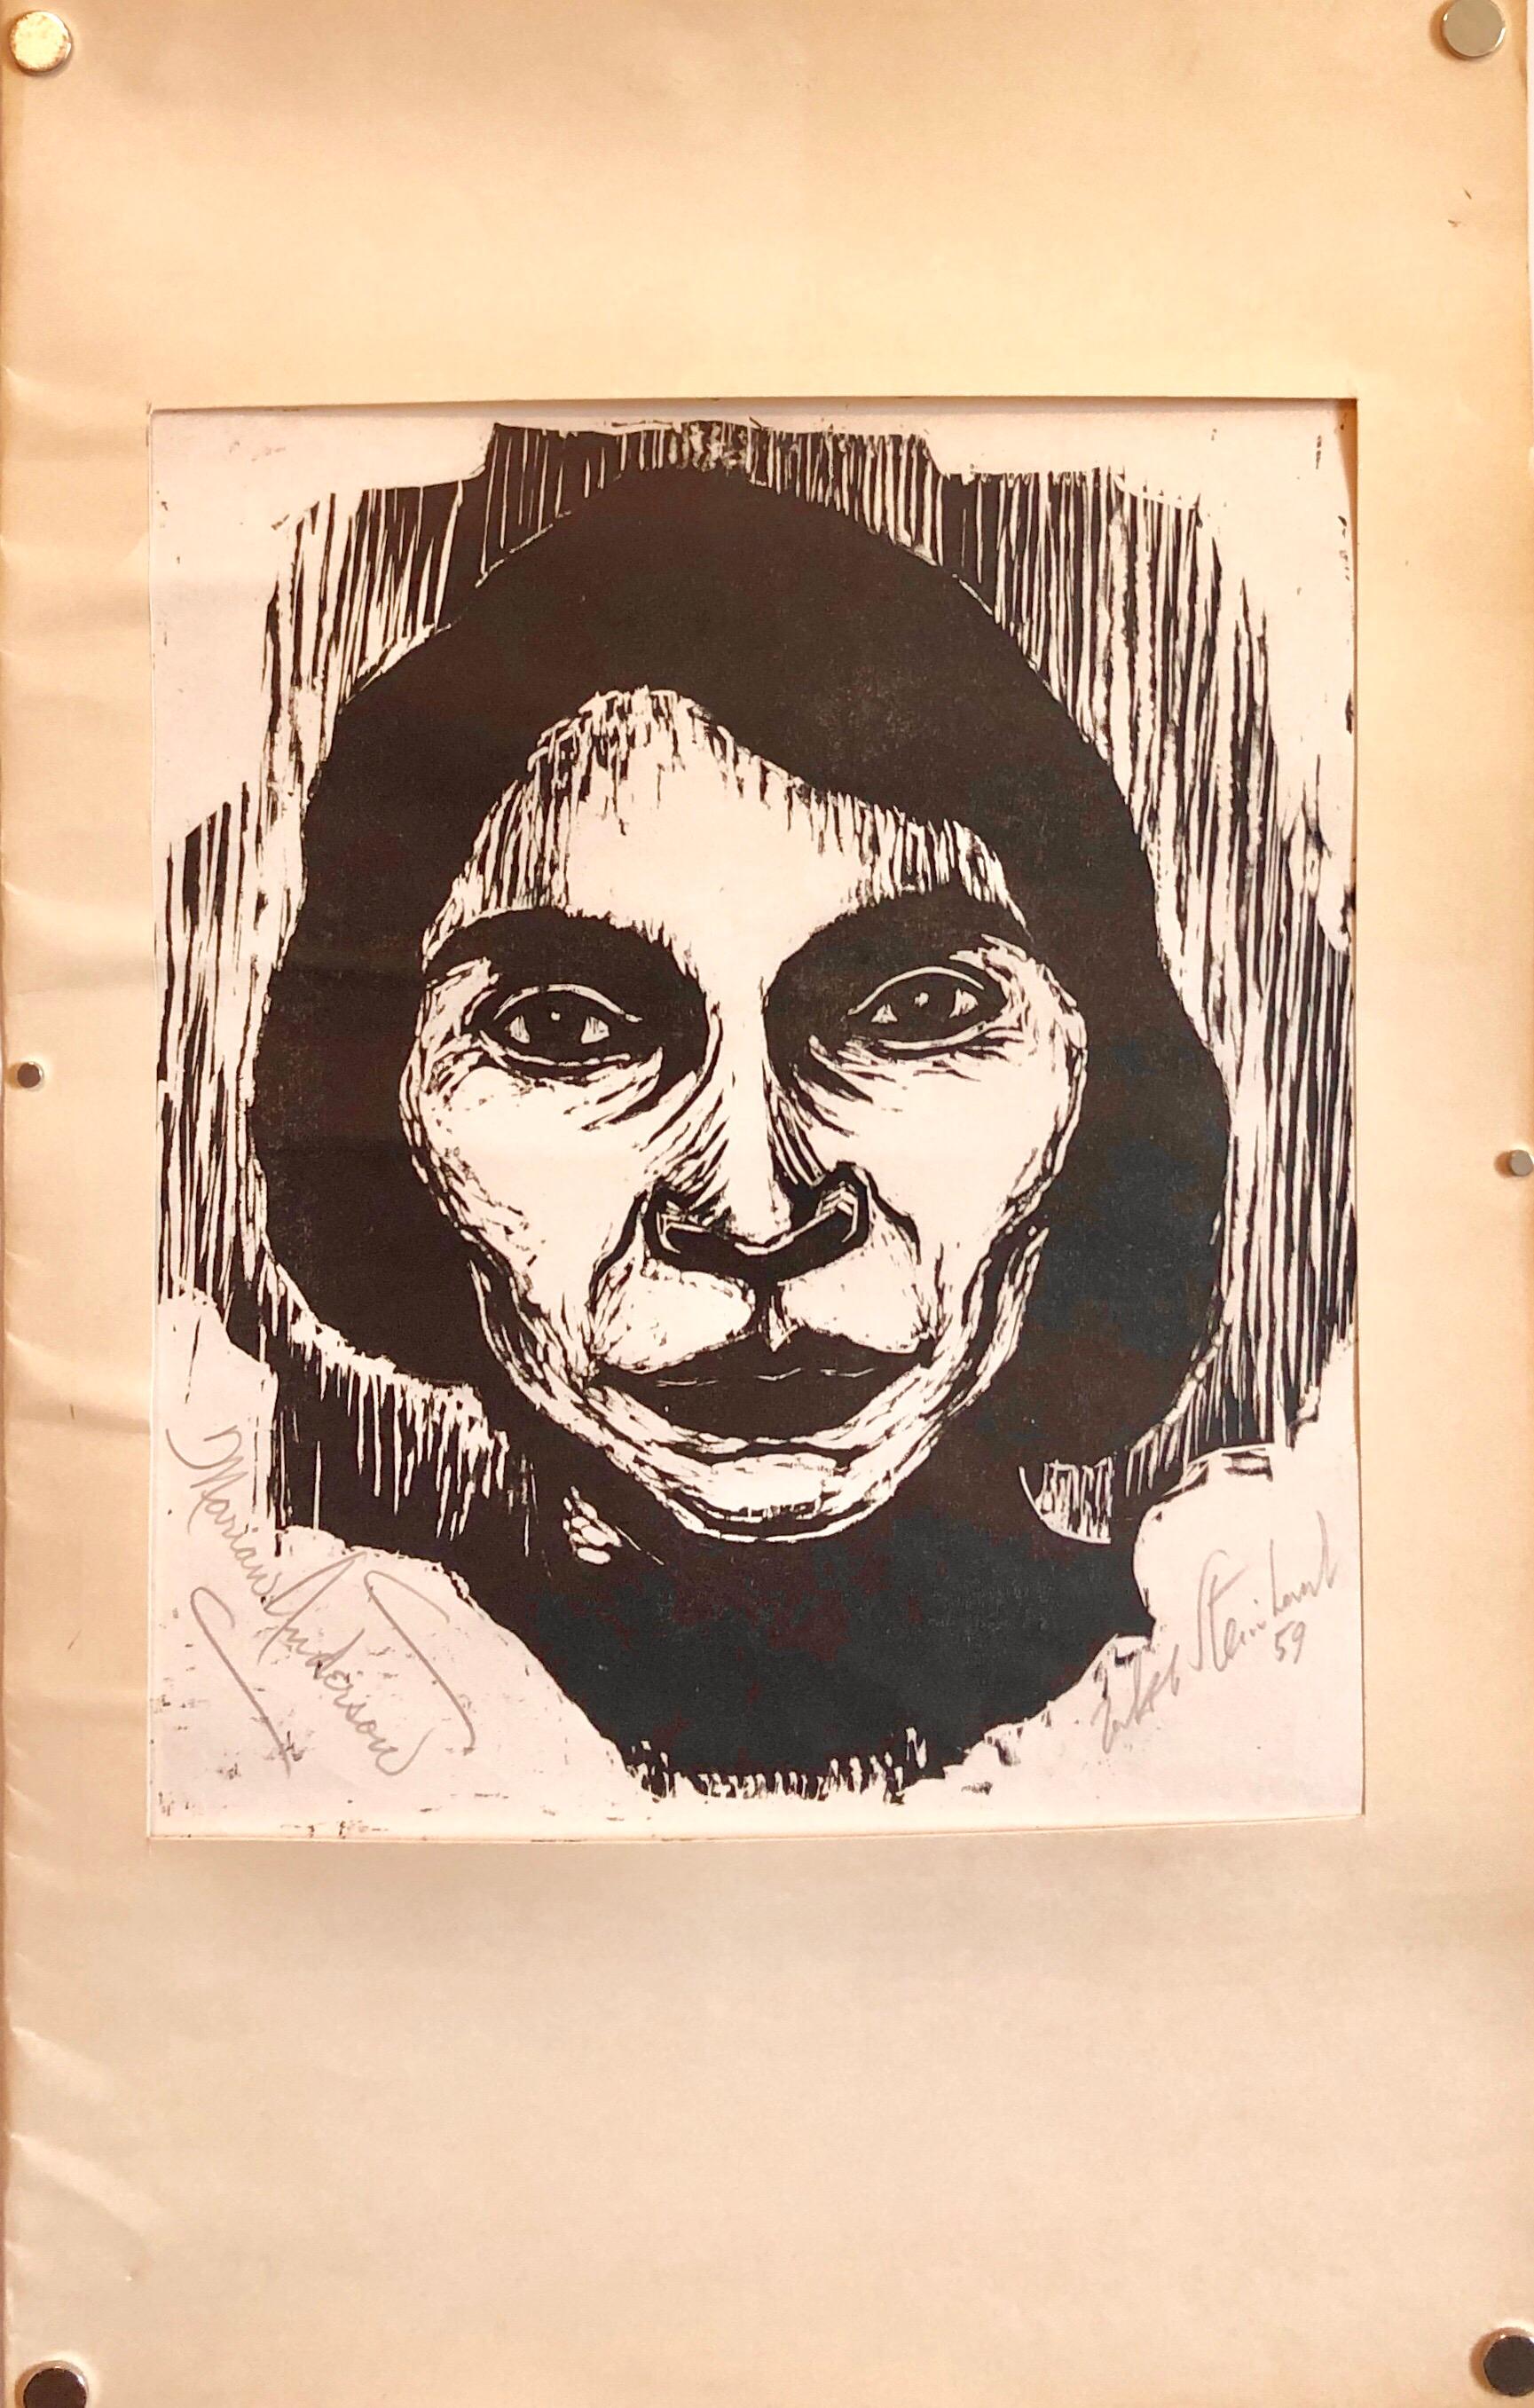 Porträt in Schwarz-Weiß, Farbholzschnitt. Bleistift signiert von beiden Jacob  Steinhardt  1887-1968 und Marian Anderson. Daher sehr selten. (In Auftrag gegeben von Dr. Leon Kolb, San Francisco)
35.8 x 23,6 cm (Bild)
Marian Anderson gilt als eine